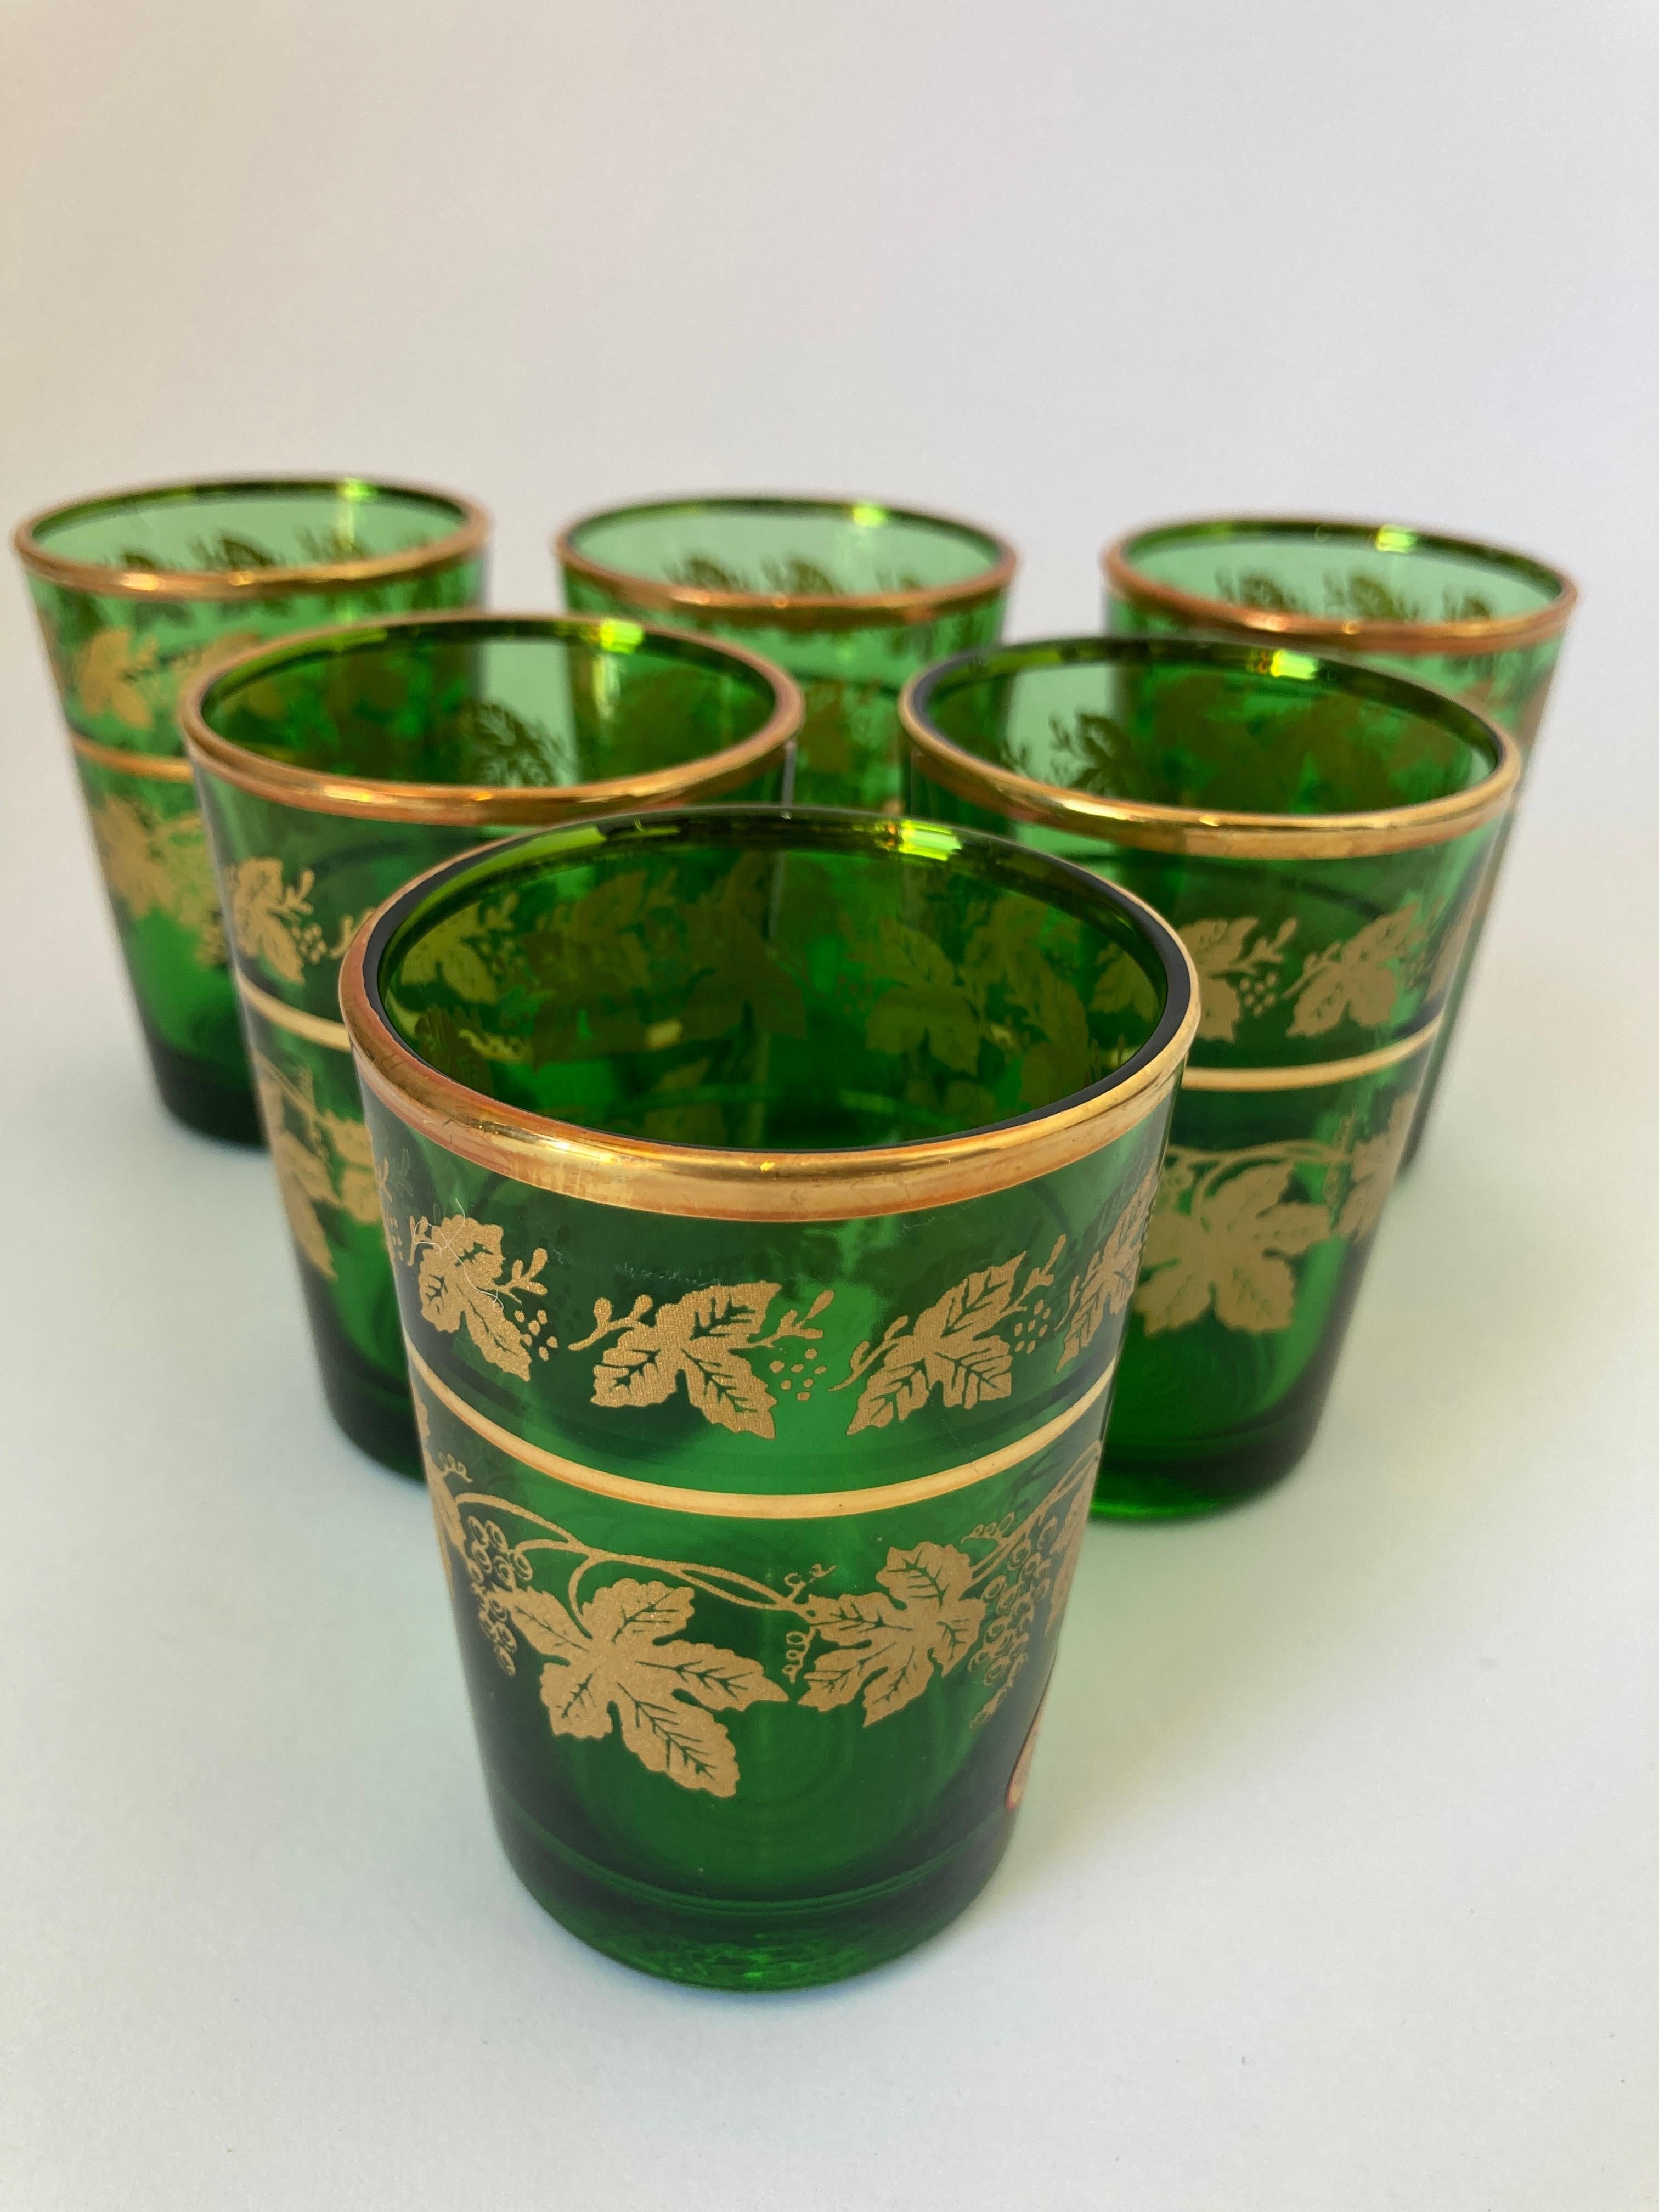 Ensemble de six verres à liqueur mauresques soufflés à la main, vert et or.
Utilisez-les pour le thé marocain ou toute autre boisson chaude ou froide.
Verres à liqueur très légers finement décorés d'une frise classique de motifs mauresques dorés.